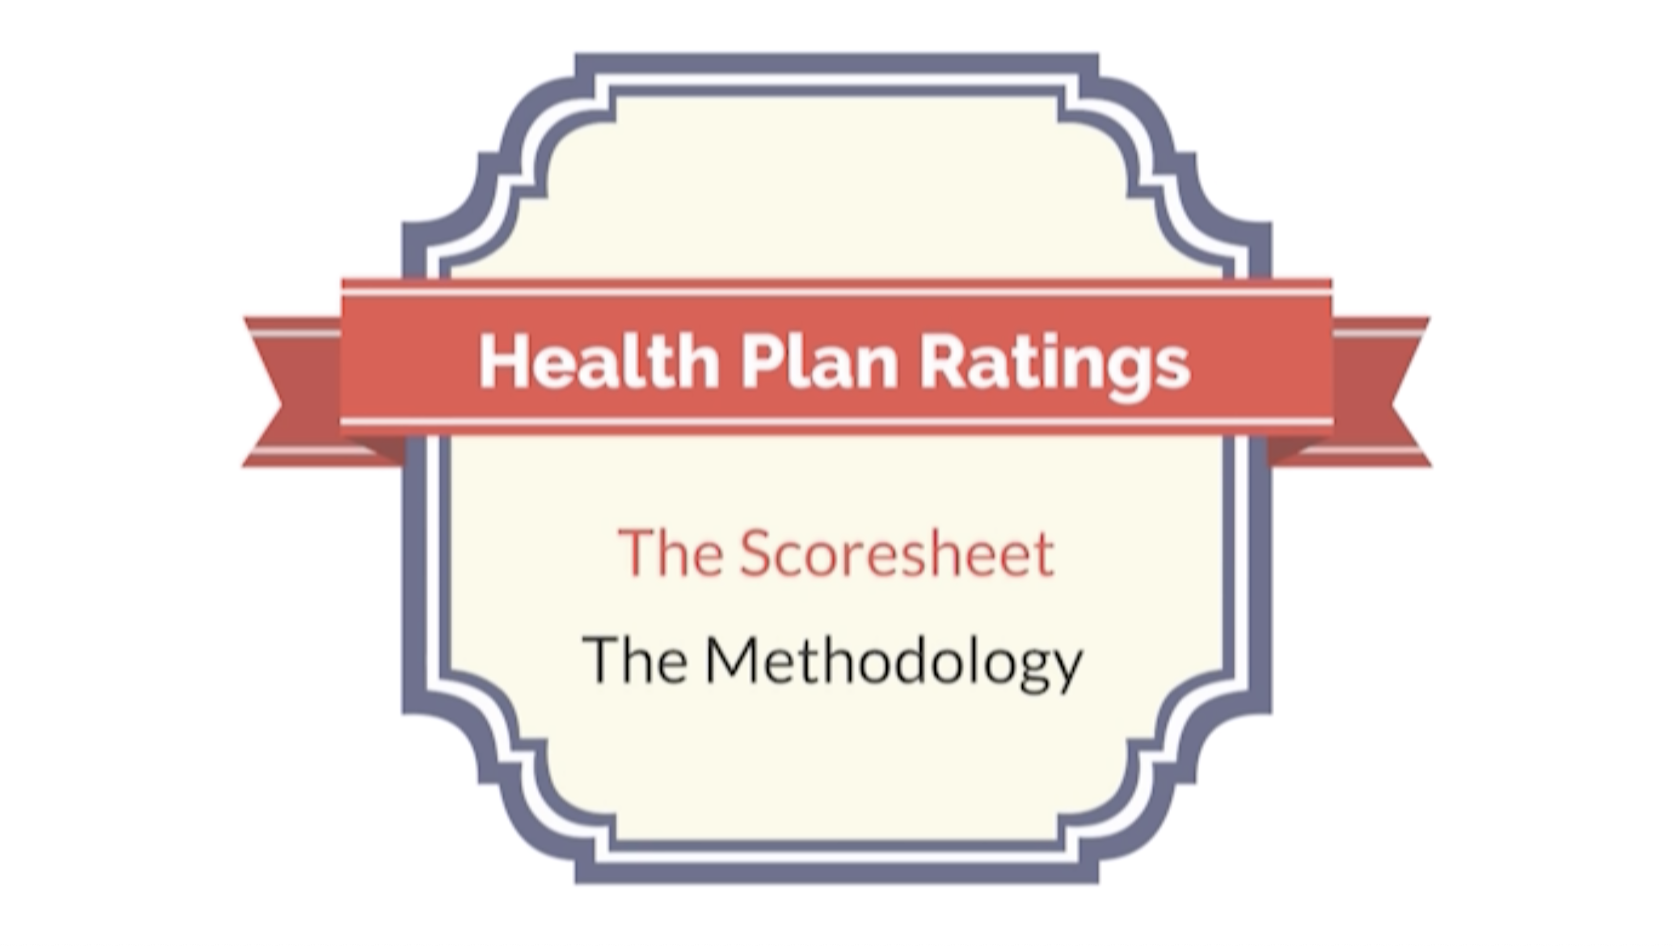 Health Plan Ratings Methodology NCQA